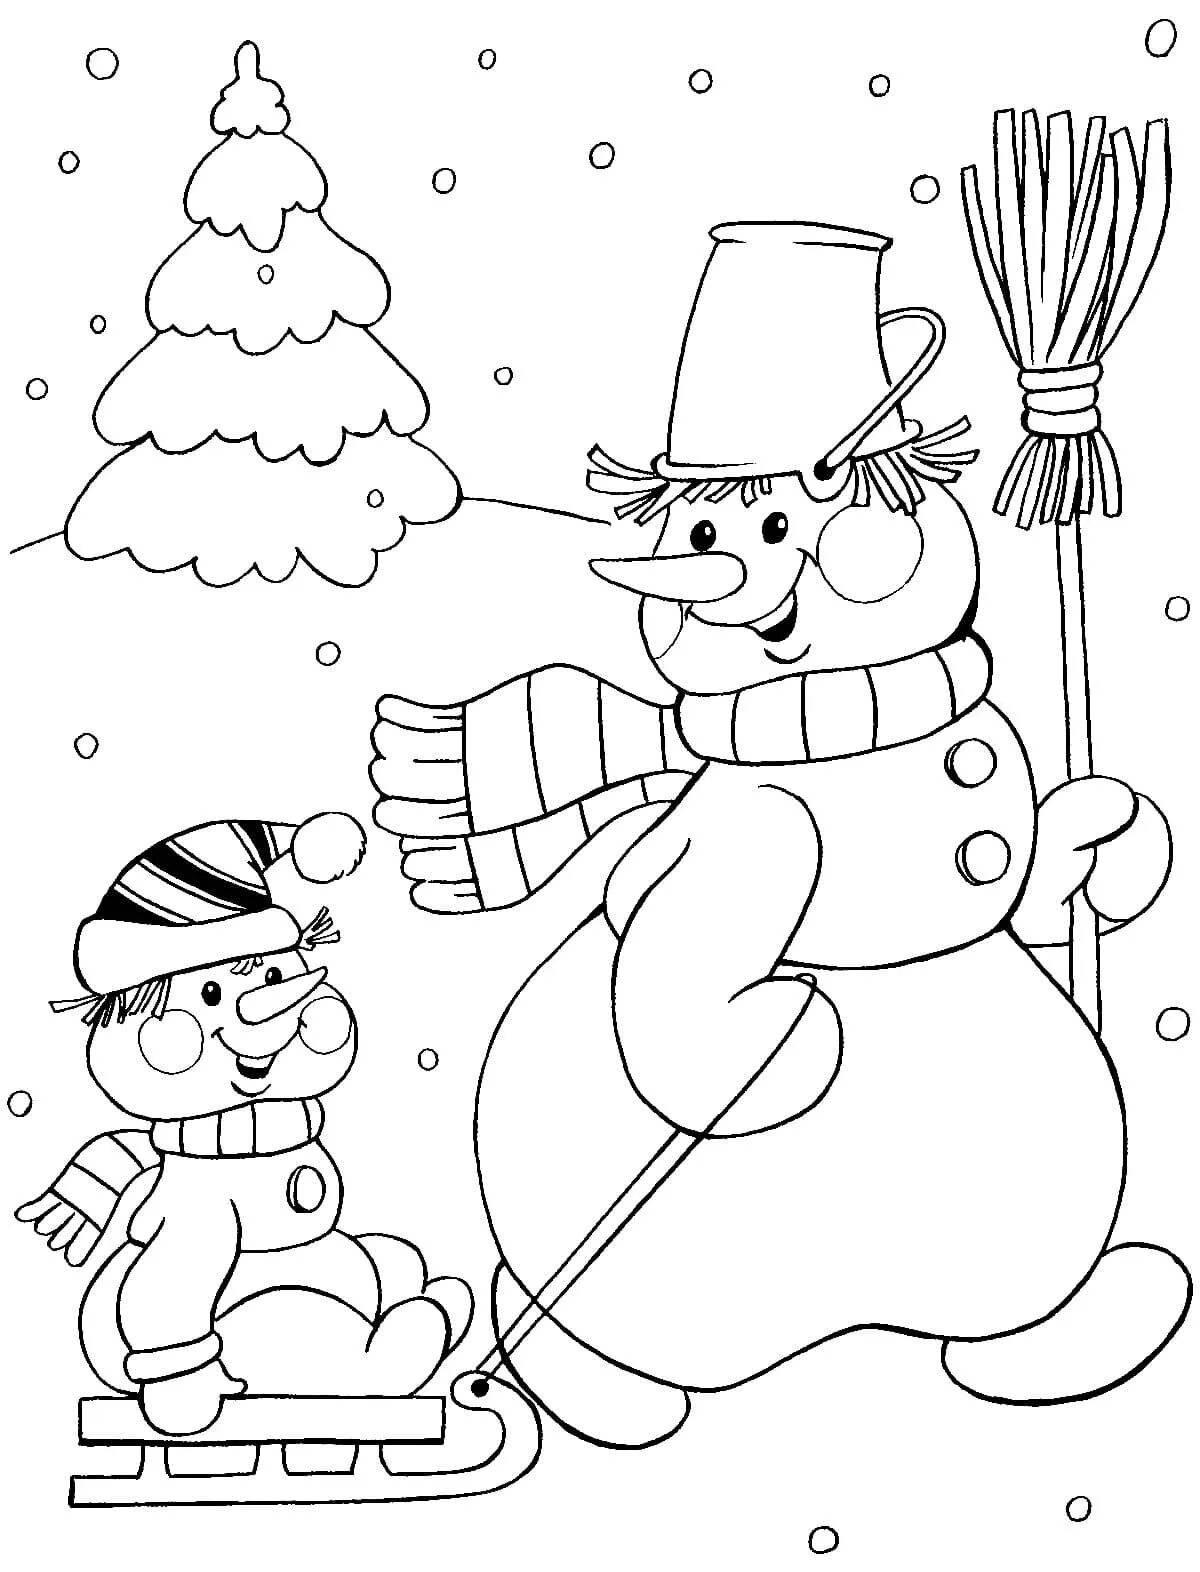 Замечательный рисунок снеговика для детей